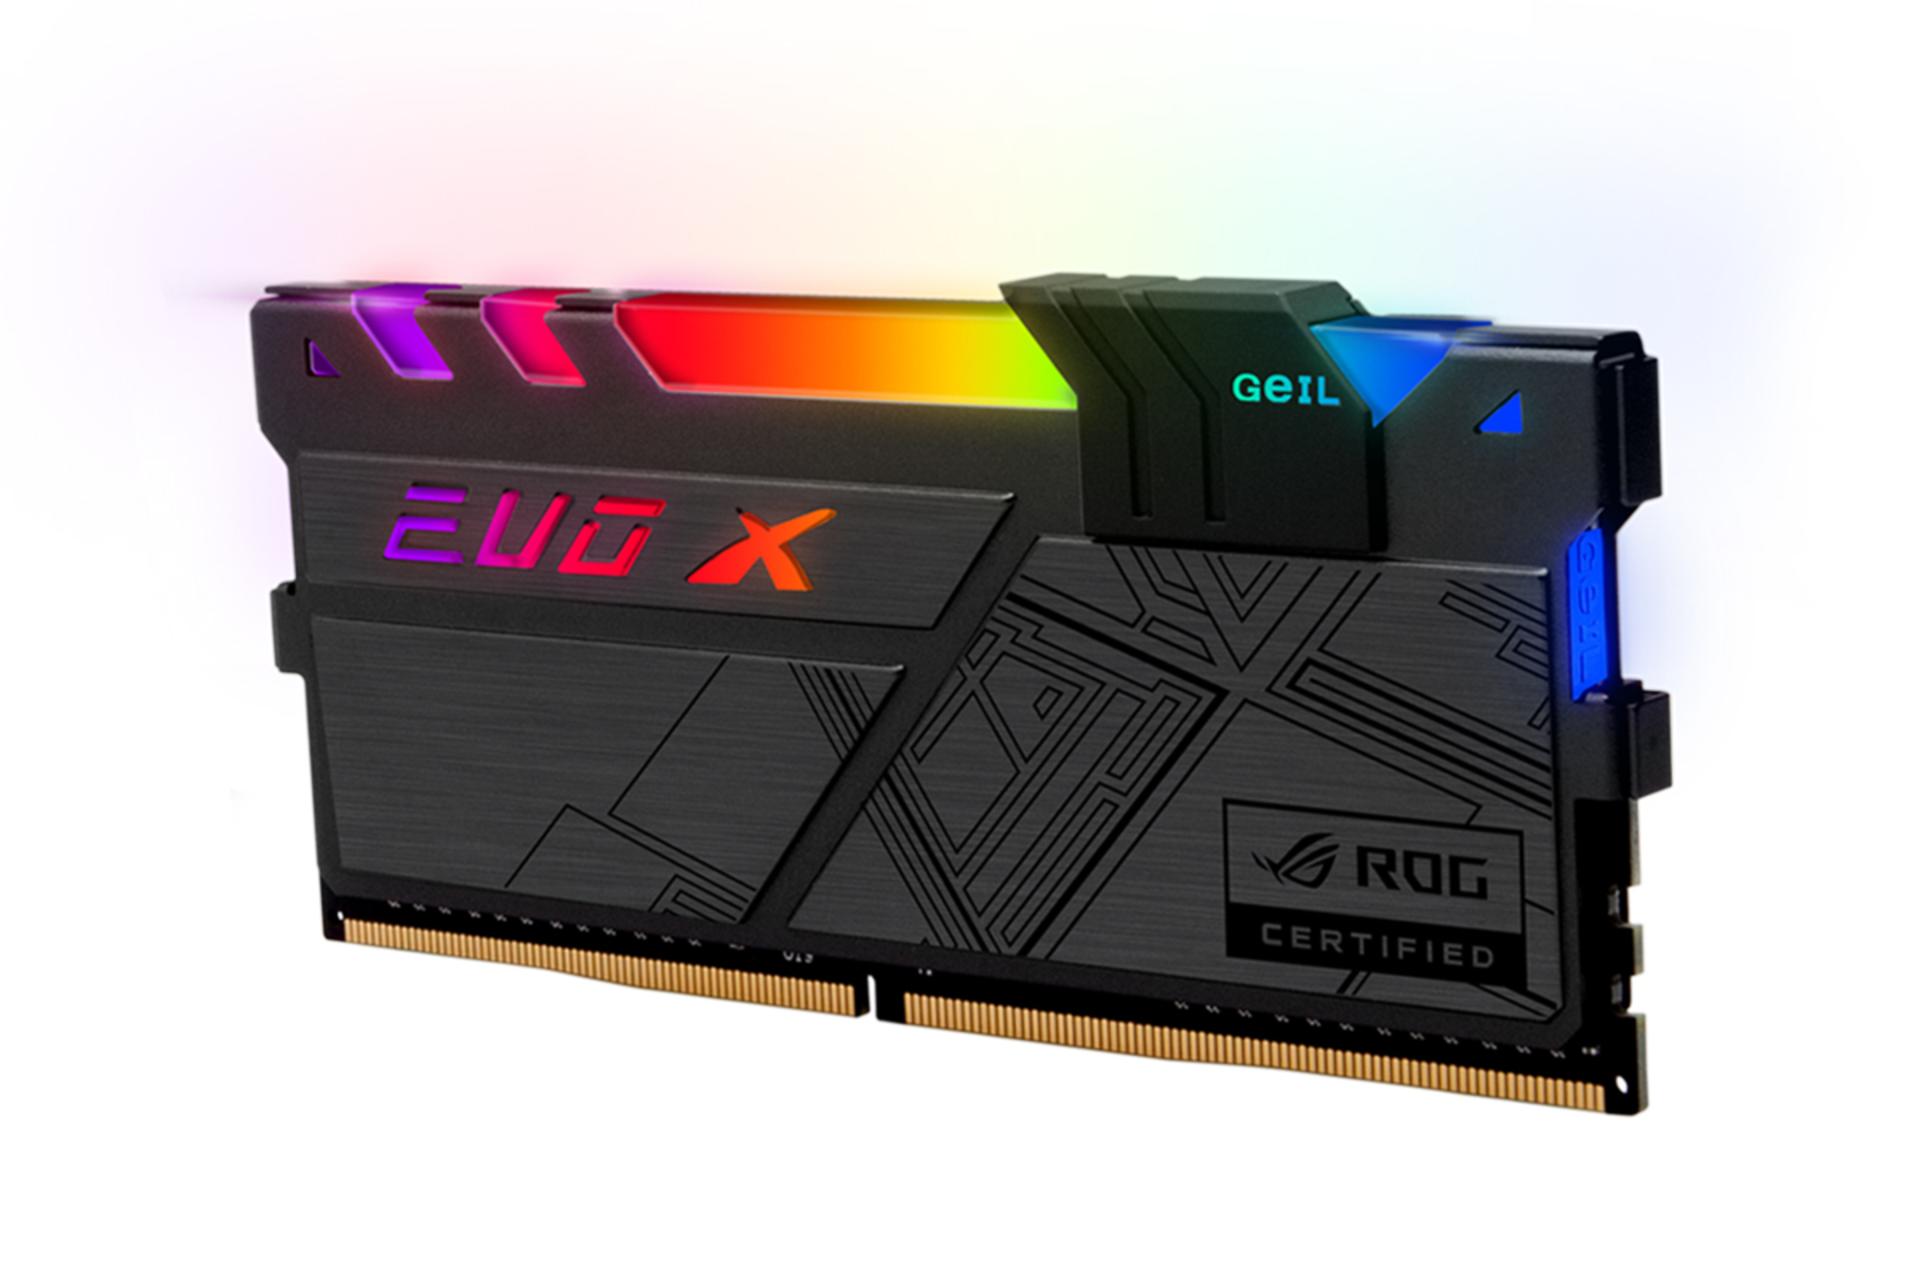 نمای کنار رم گیل EVO X II ROG-certified ظرفیت 16 گیگابایت (2x8) از نوع DDR4-3200